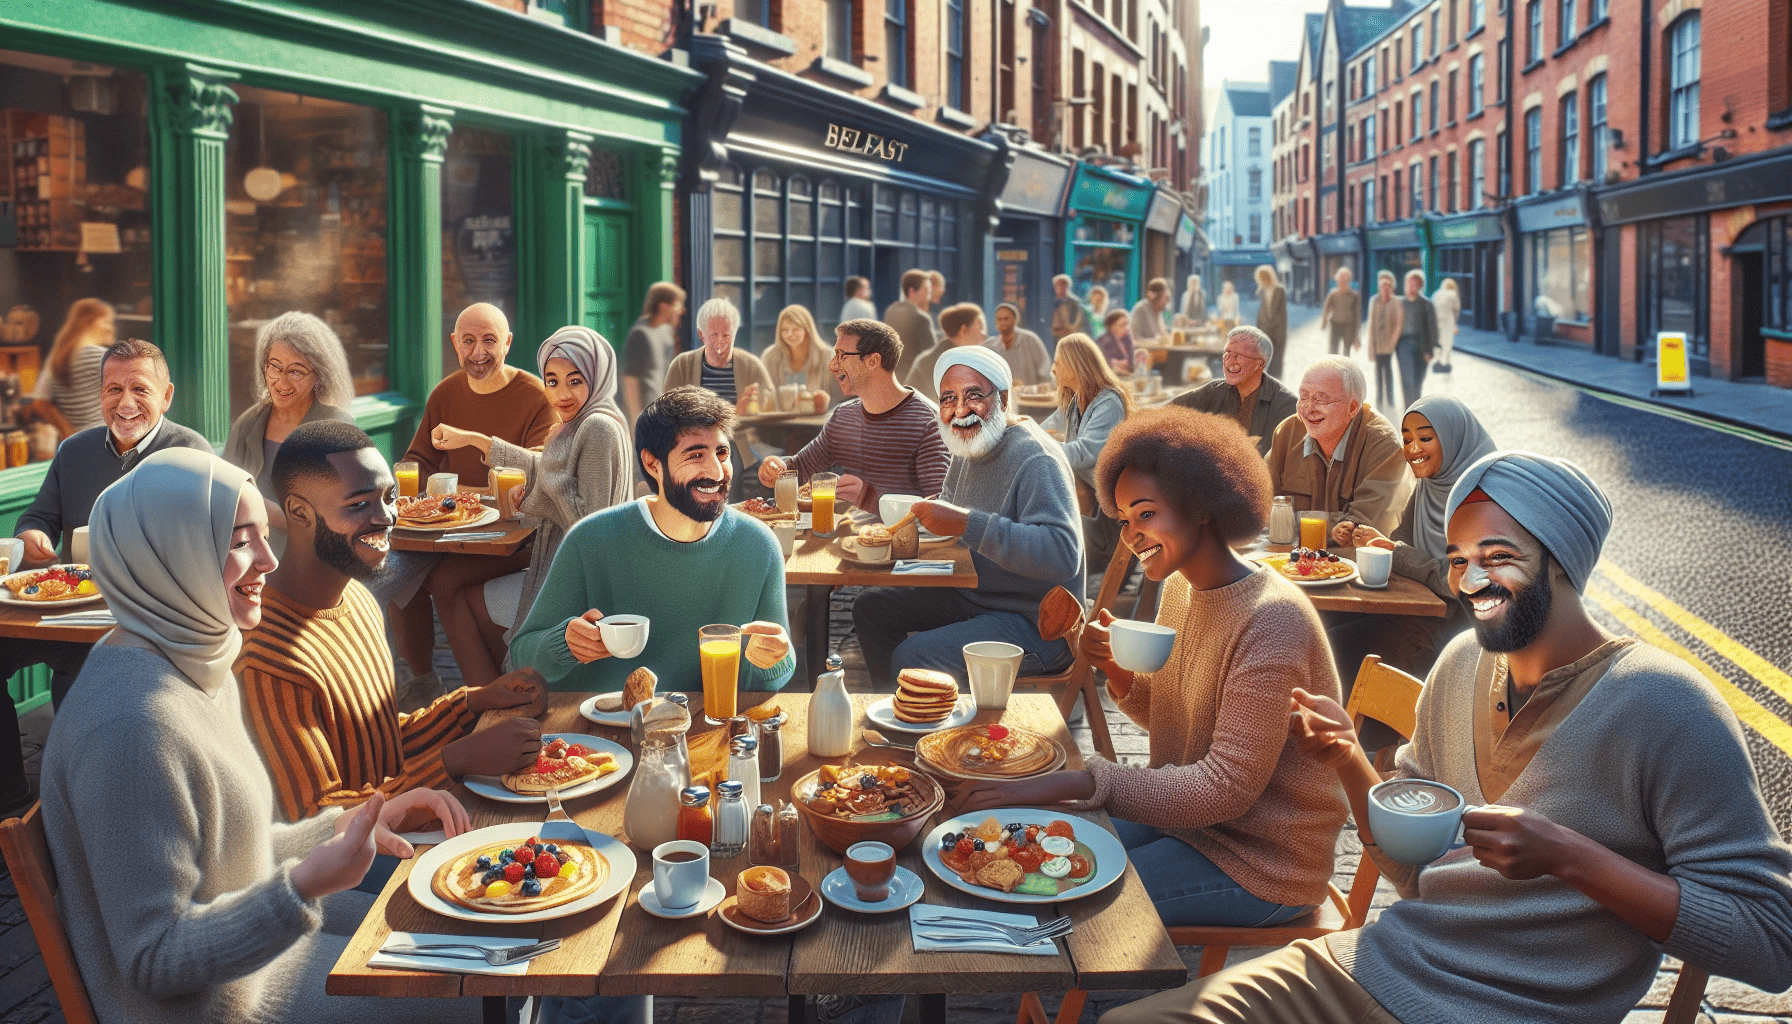 A bustling breakfast spot in Belfast city center